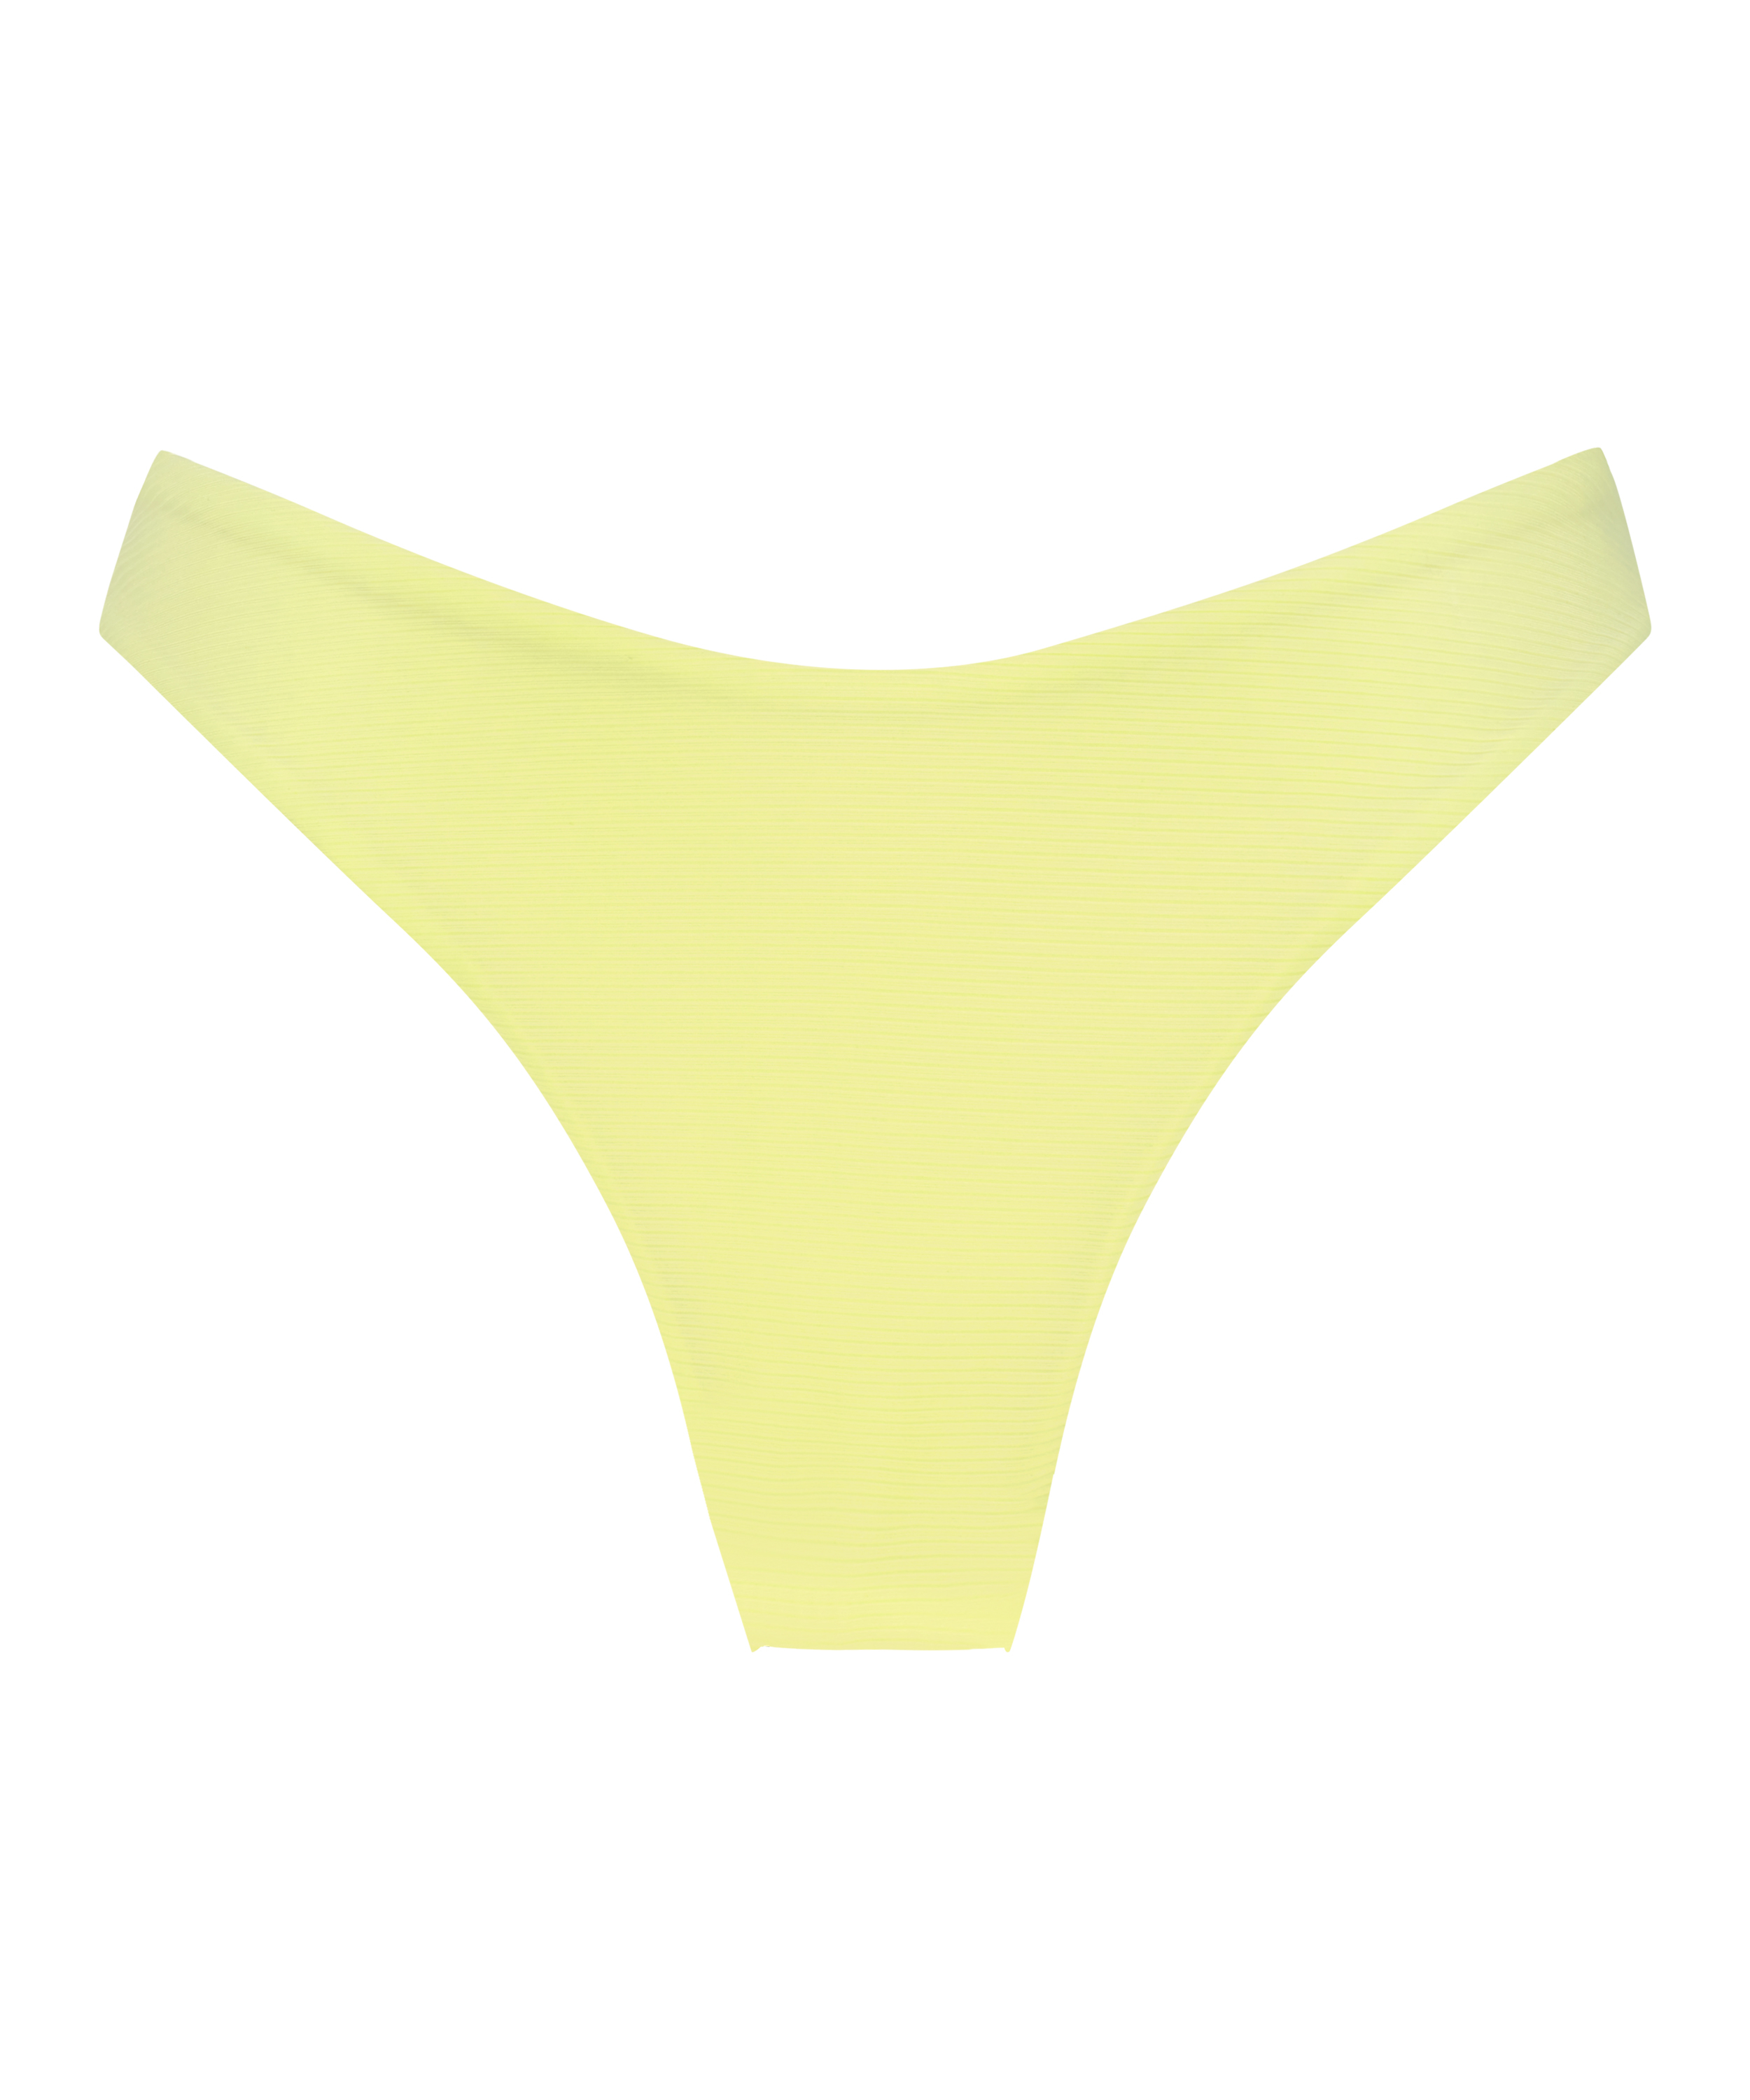 Bikinislip mit hohem Beinausschnitt Texture, Gelb, main